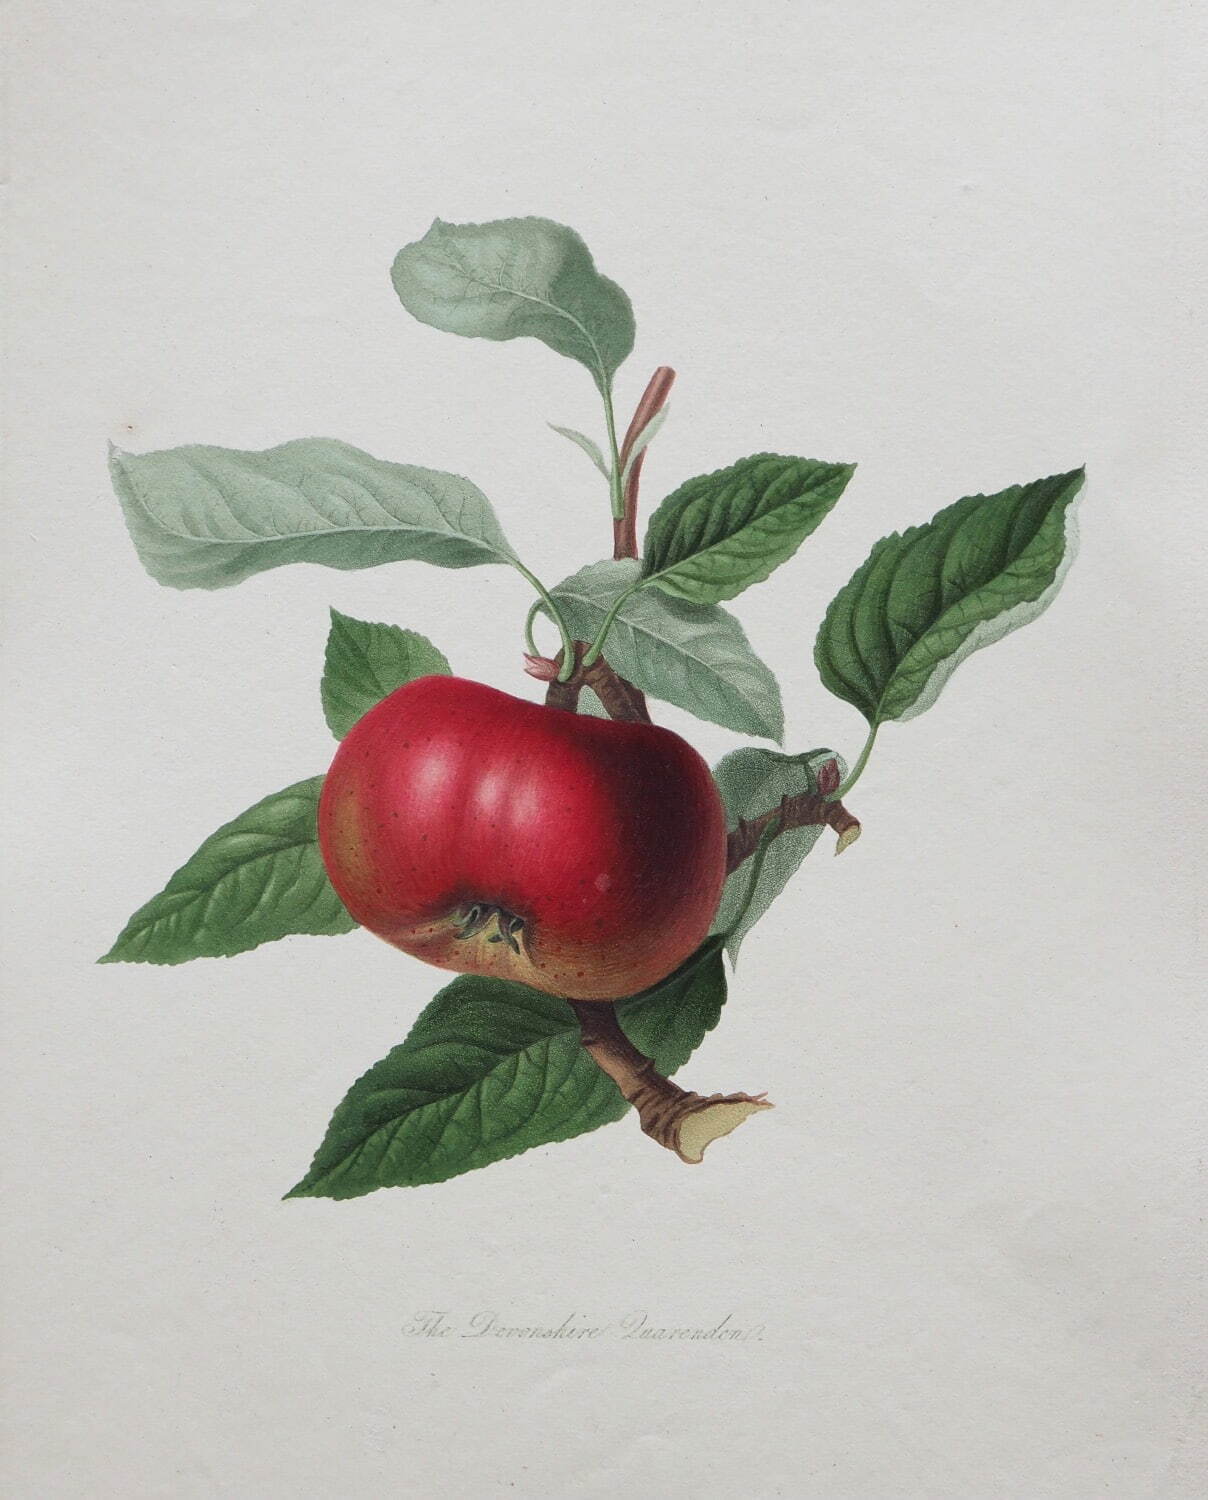 ウィリアム・フッカー 《リンゴ「デヴォンシャー・カレンデン」》 1818年 個人蔵
Photo Michael Whiteway